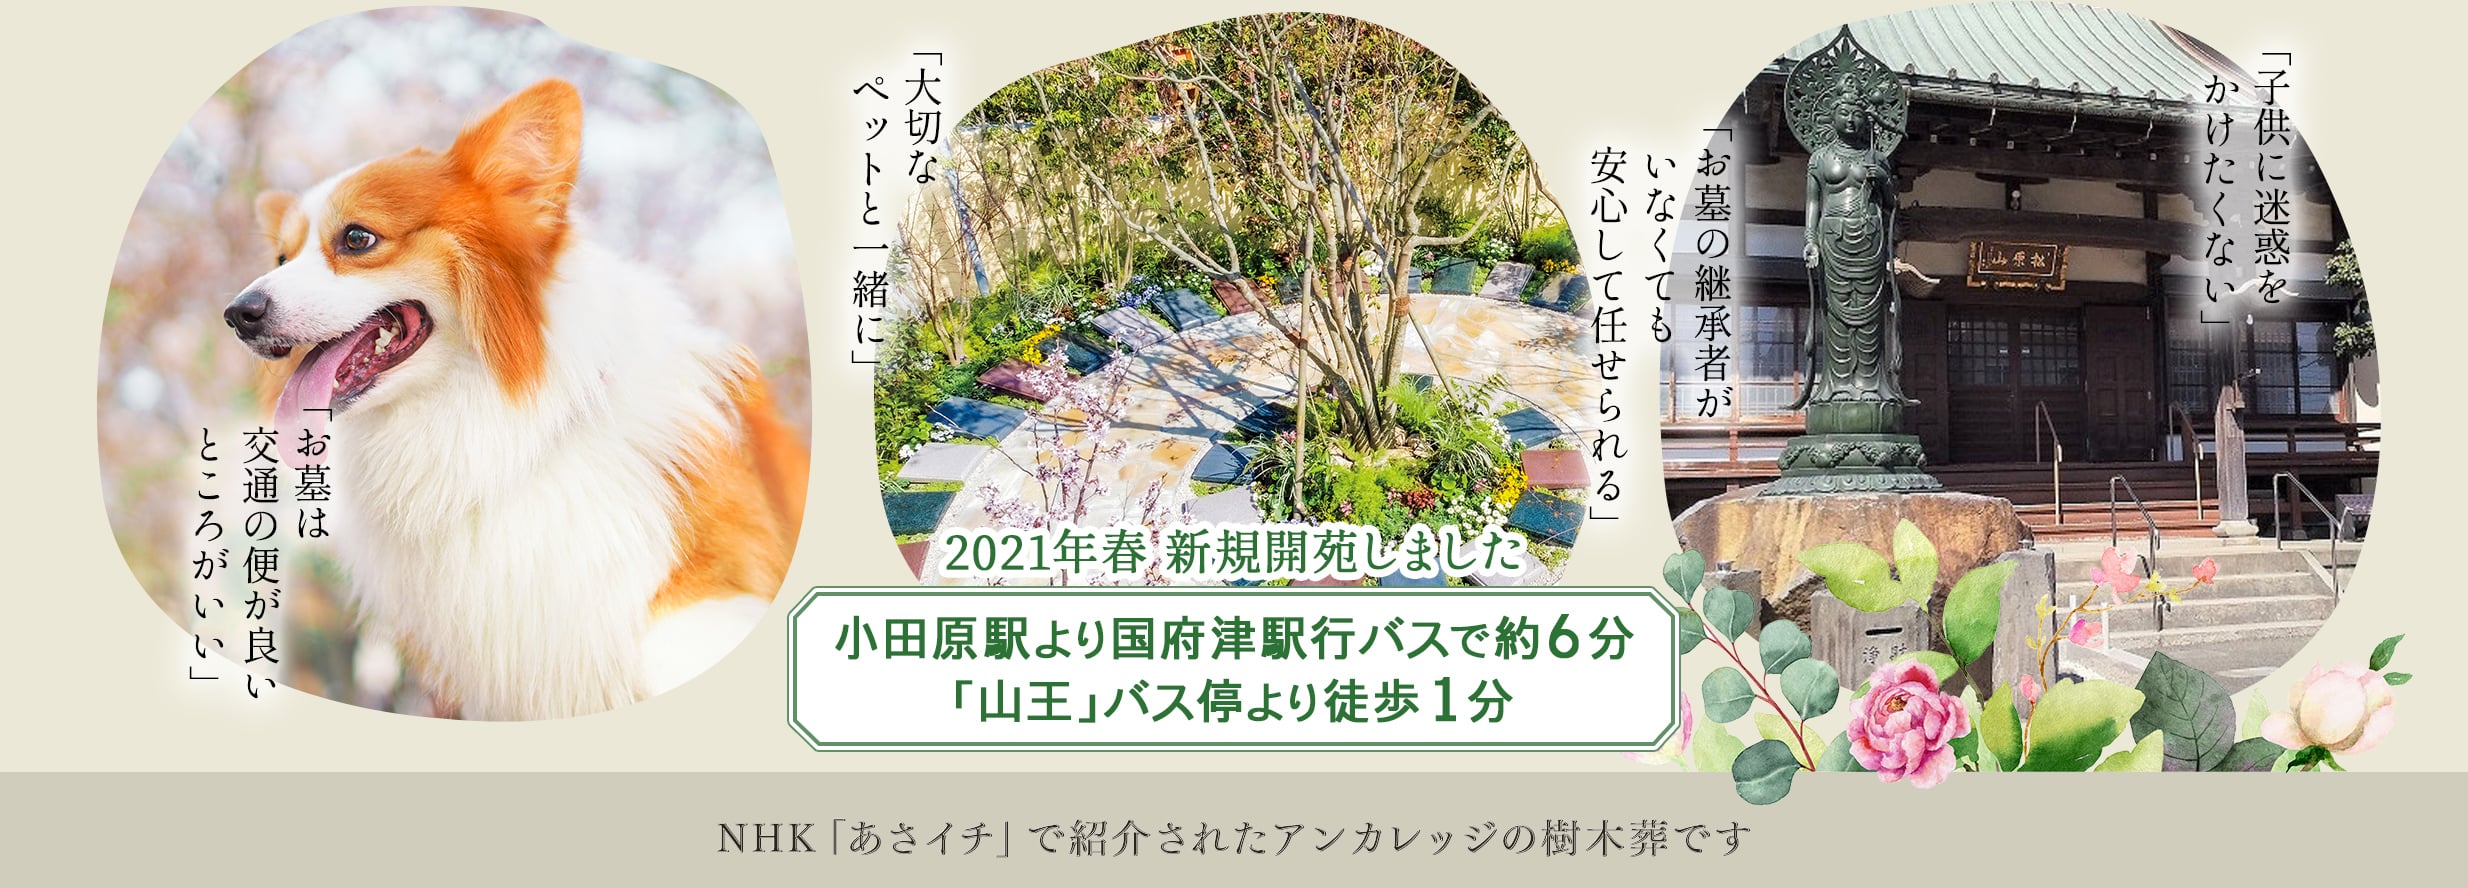 2021年春新規開苑しました　小田原駅より国府津行バスで約6分「山王」バス停より徒歩1分　NHKあさイチで紹介されたアンカレッジの庭苑です。